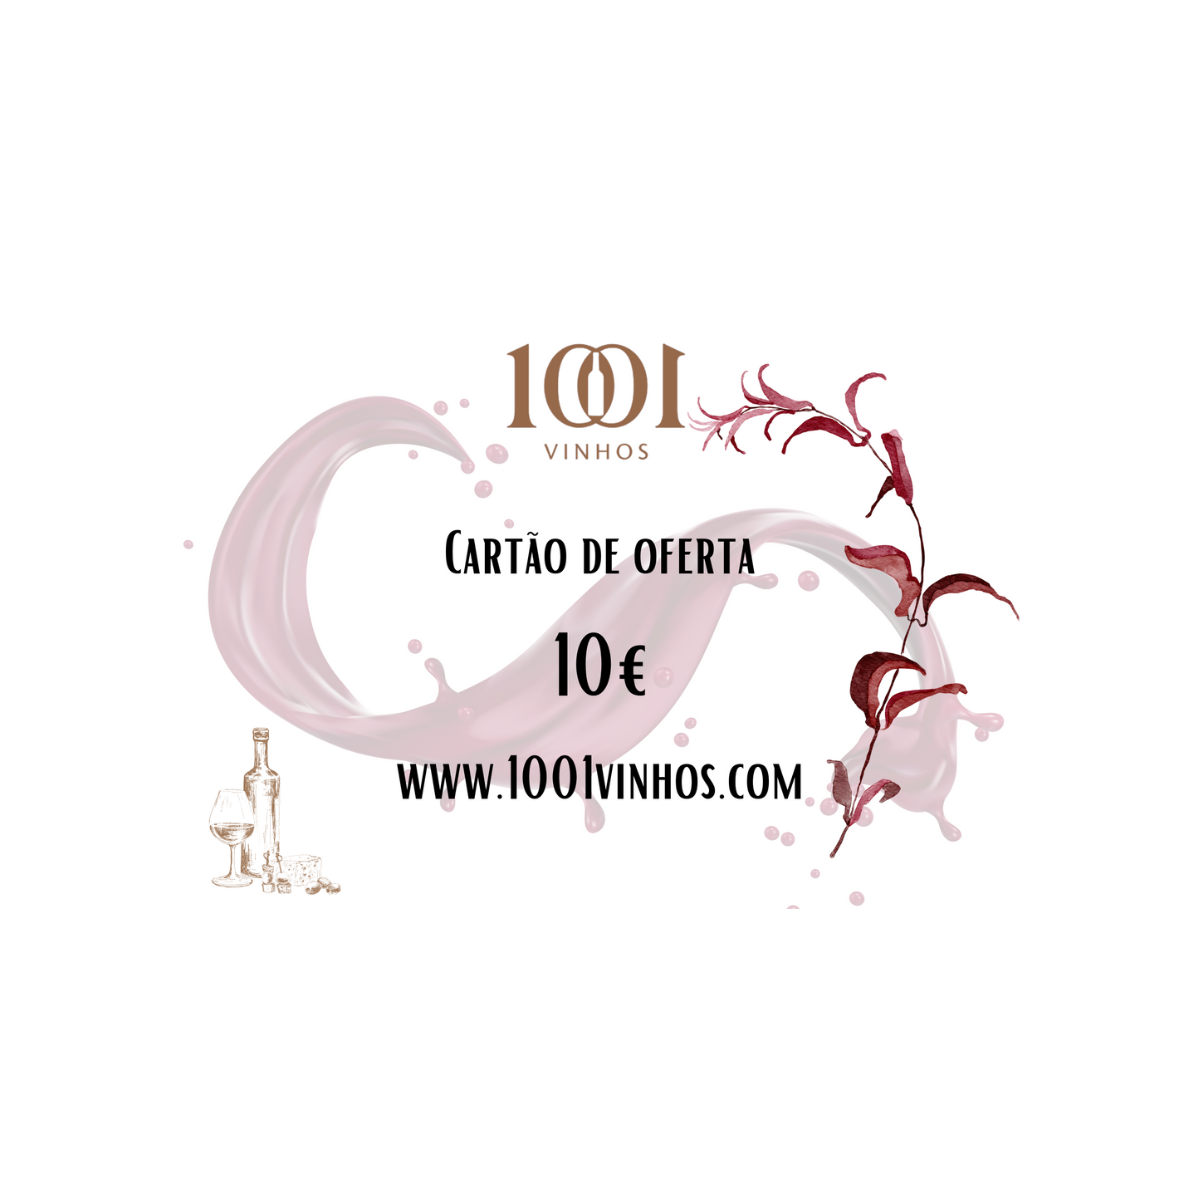 Cartão de oferta 1001 vinhos